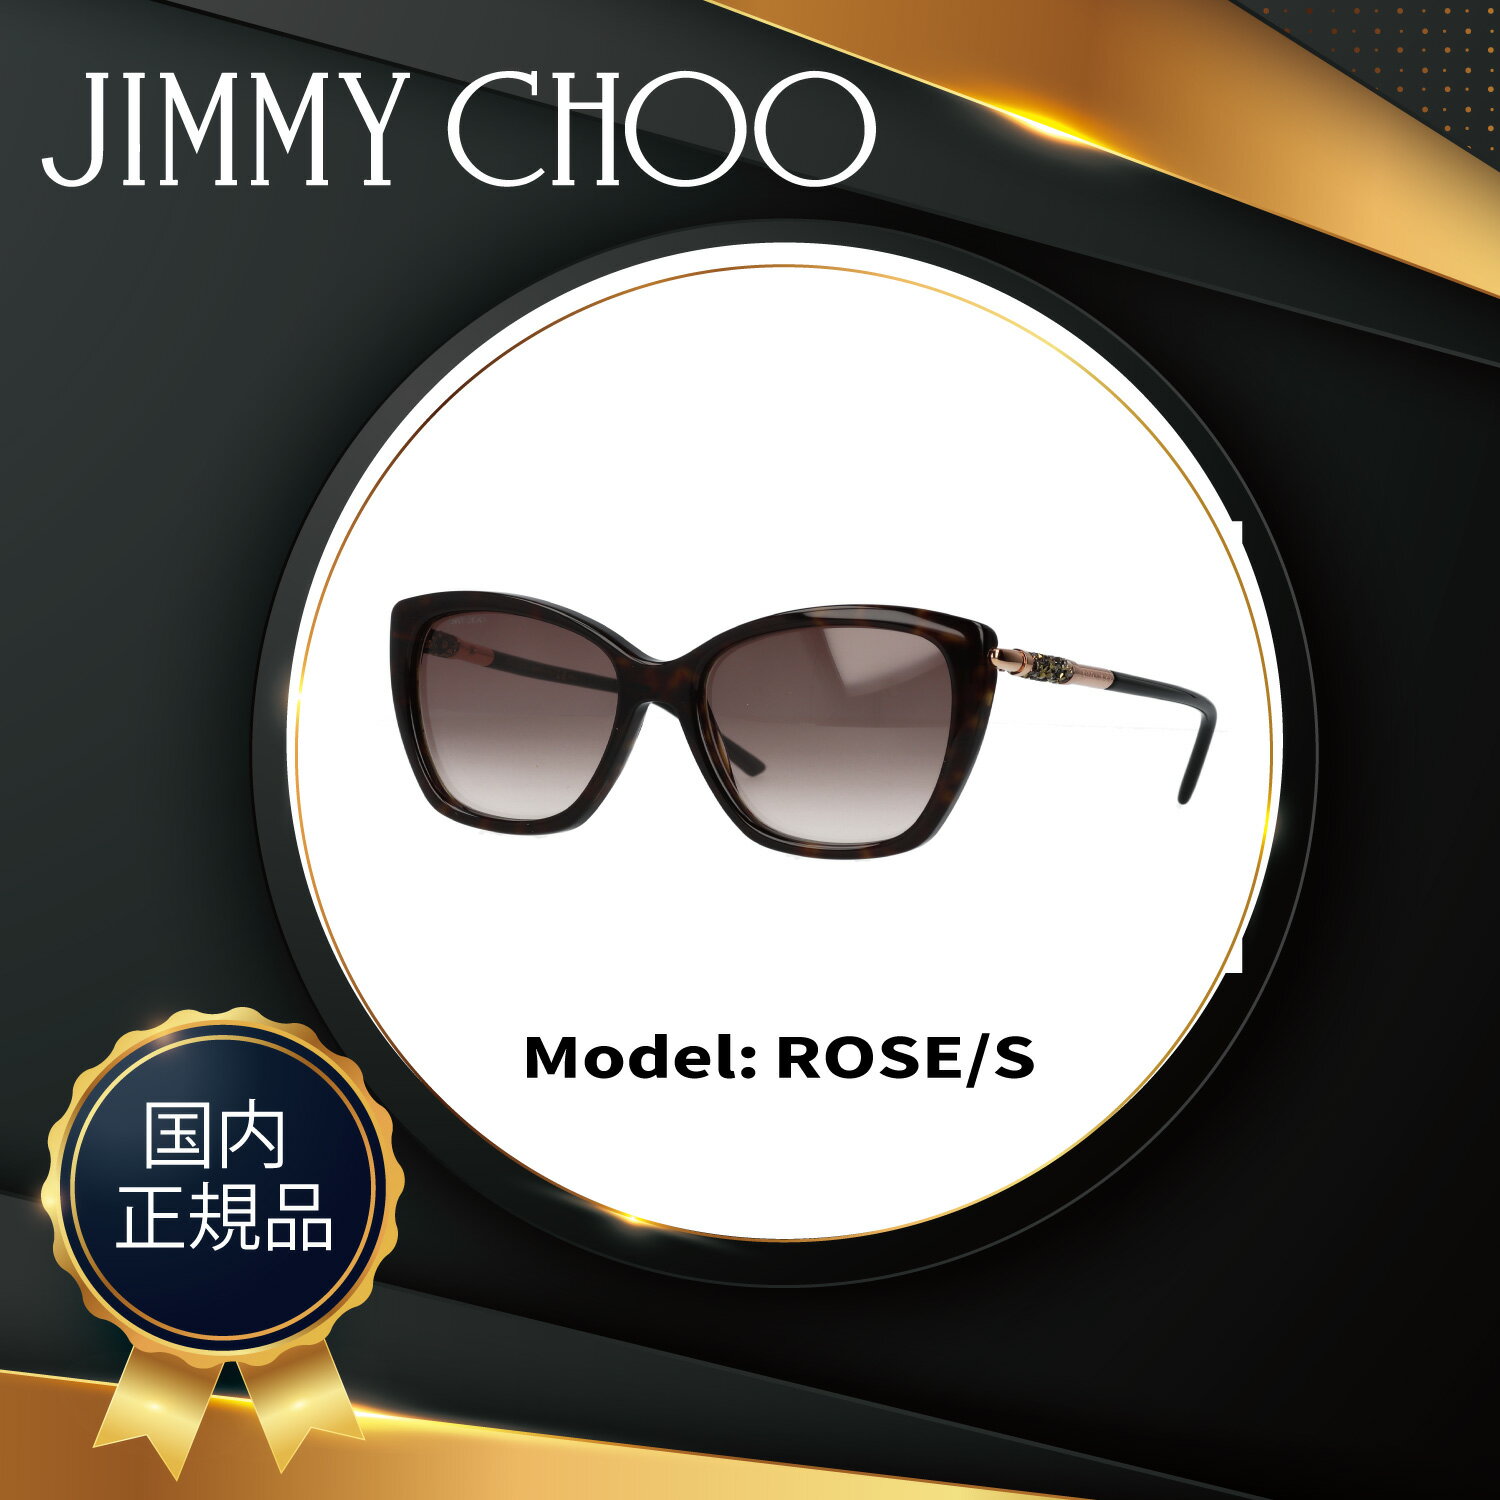 【国内正規品】 ジミーチュウ サングラス レディース ブランド JIMMY CHOO ROSE/S 55サイズ バタフライ型 フォックス型 女性 女性用 紫外線カット率99.9% レディースサングラス UVカット